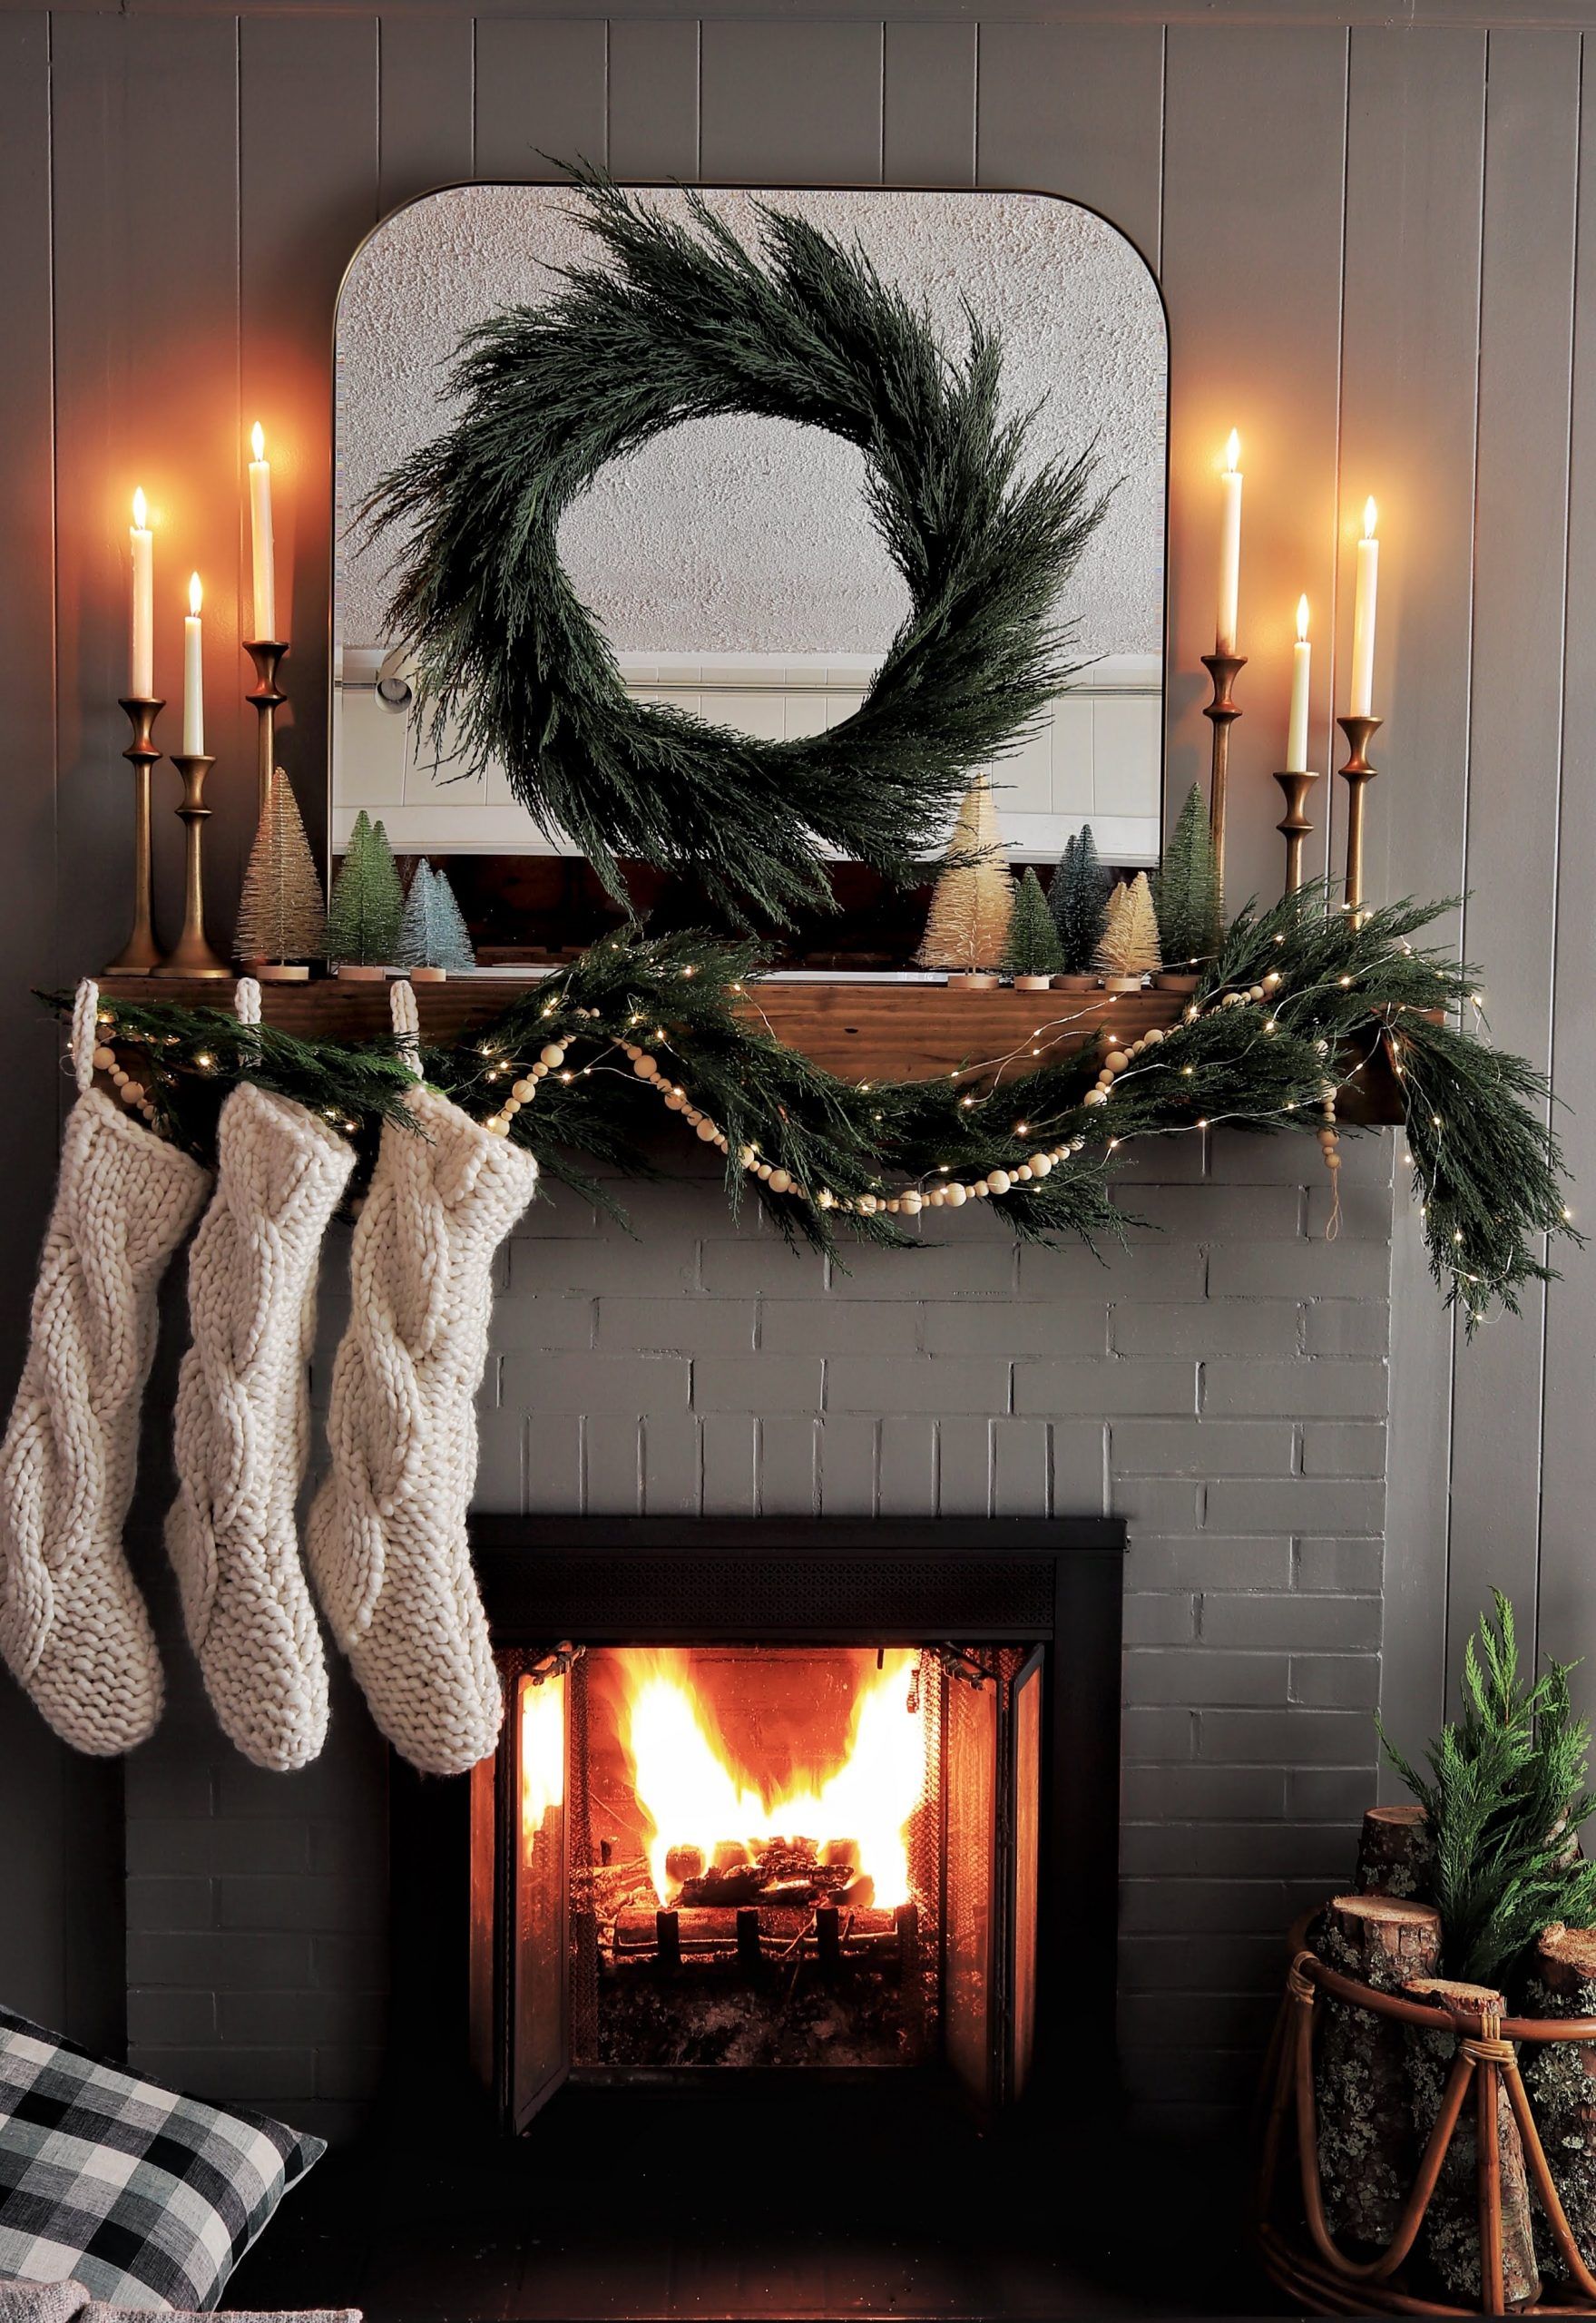 christmas fireplace stockings